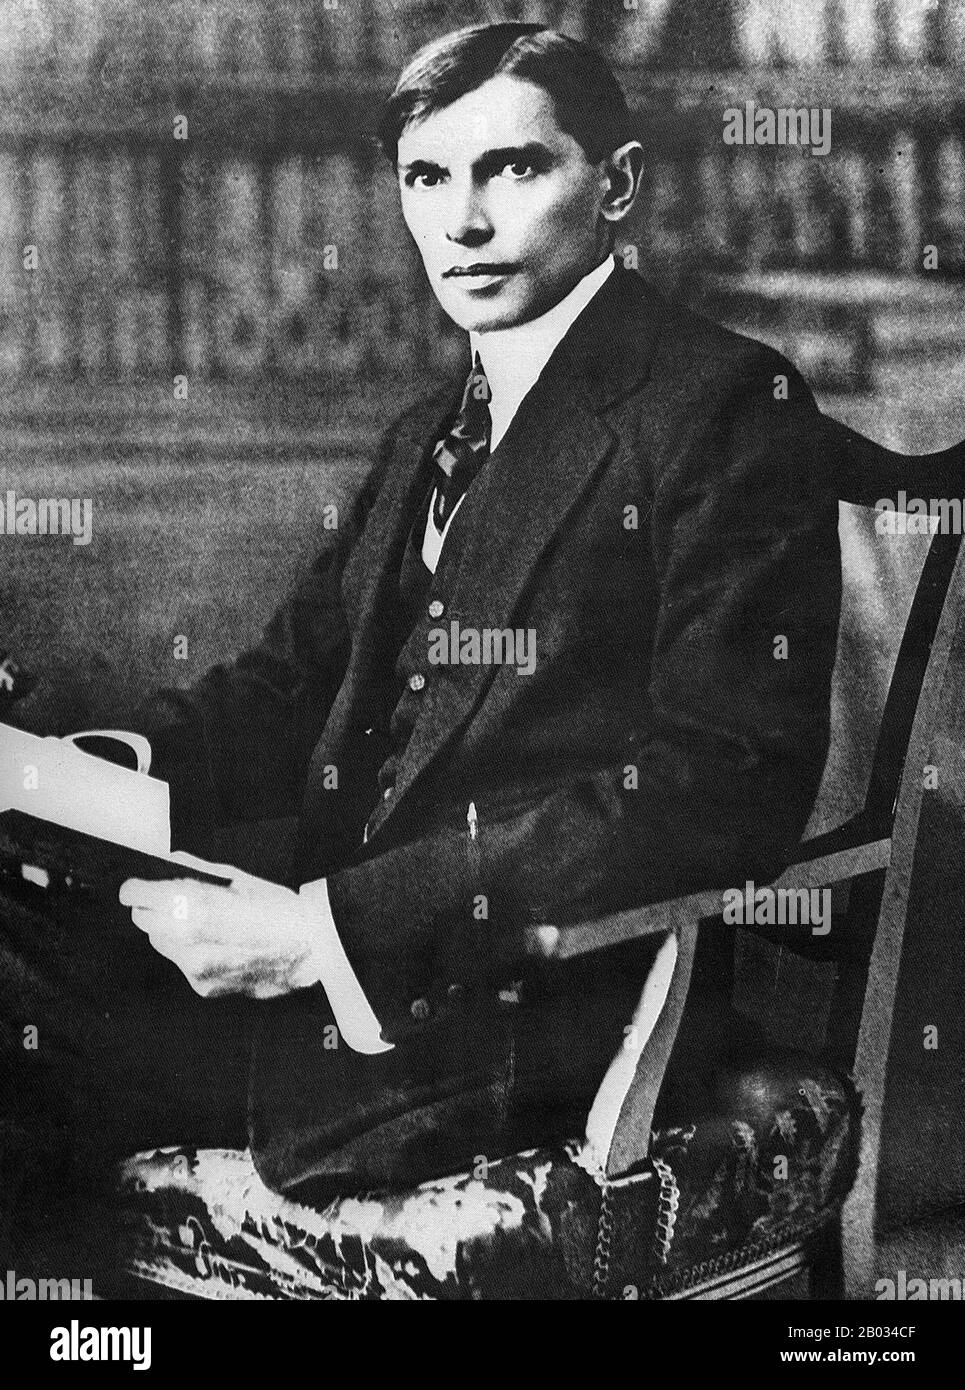 Muhammad Ali Jinnah (25 décembre 1876 – 11 septembre 1948) était avocat, politicien, homme d'État et fondateur du Pakistan au XXe siècle. Il est populairement et officiellement connu au Pakistan sous le nom de Quaid-e-Azam (Grand leader). Jinnah est décédée à 71 ans en septembre 1948, un peu plus d'un an après que le Pakistan ait obtenu son indépendance de l'Empire britannique. Banque D'Images